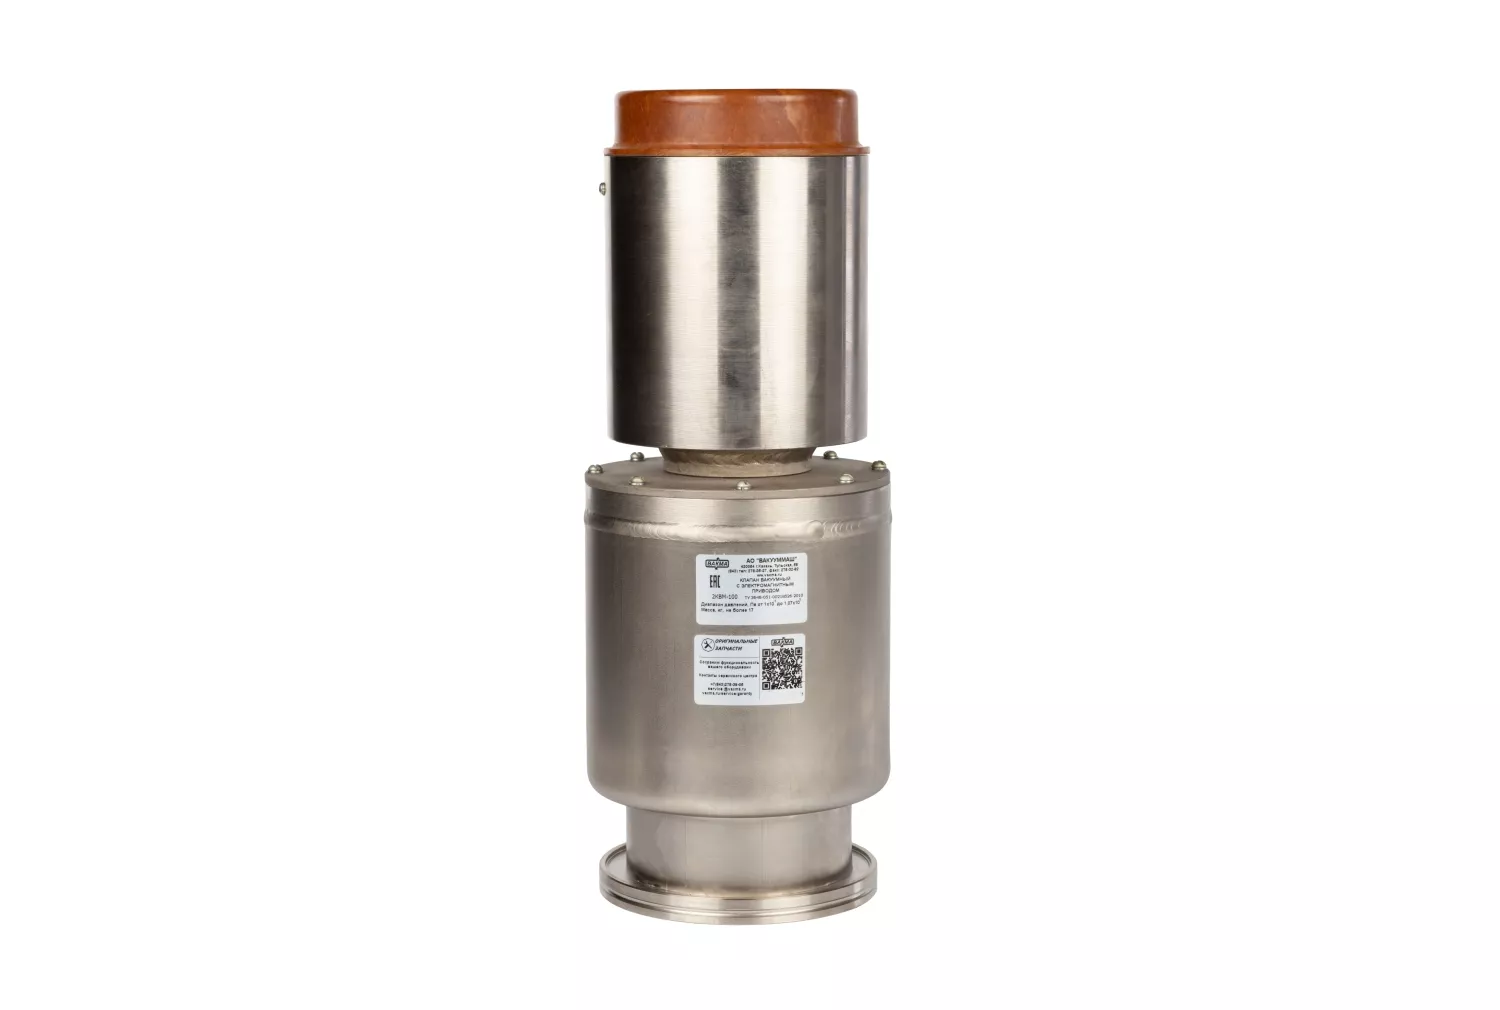 Купить в АО Вакууммаш ✓ Электромагнитный вакуумный клапан КВМ-100 ✦ узнать цены и отзывы в каталоге